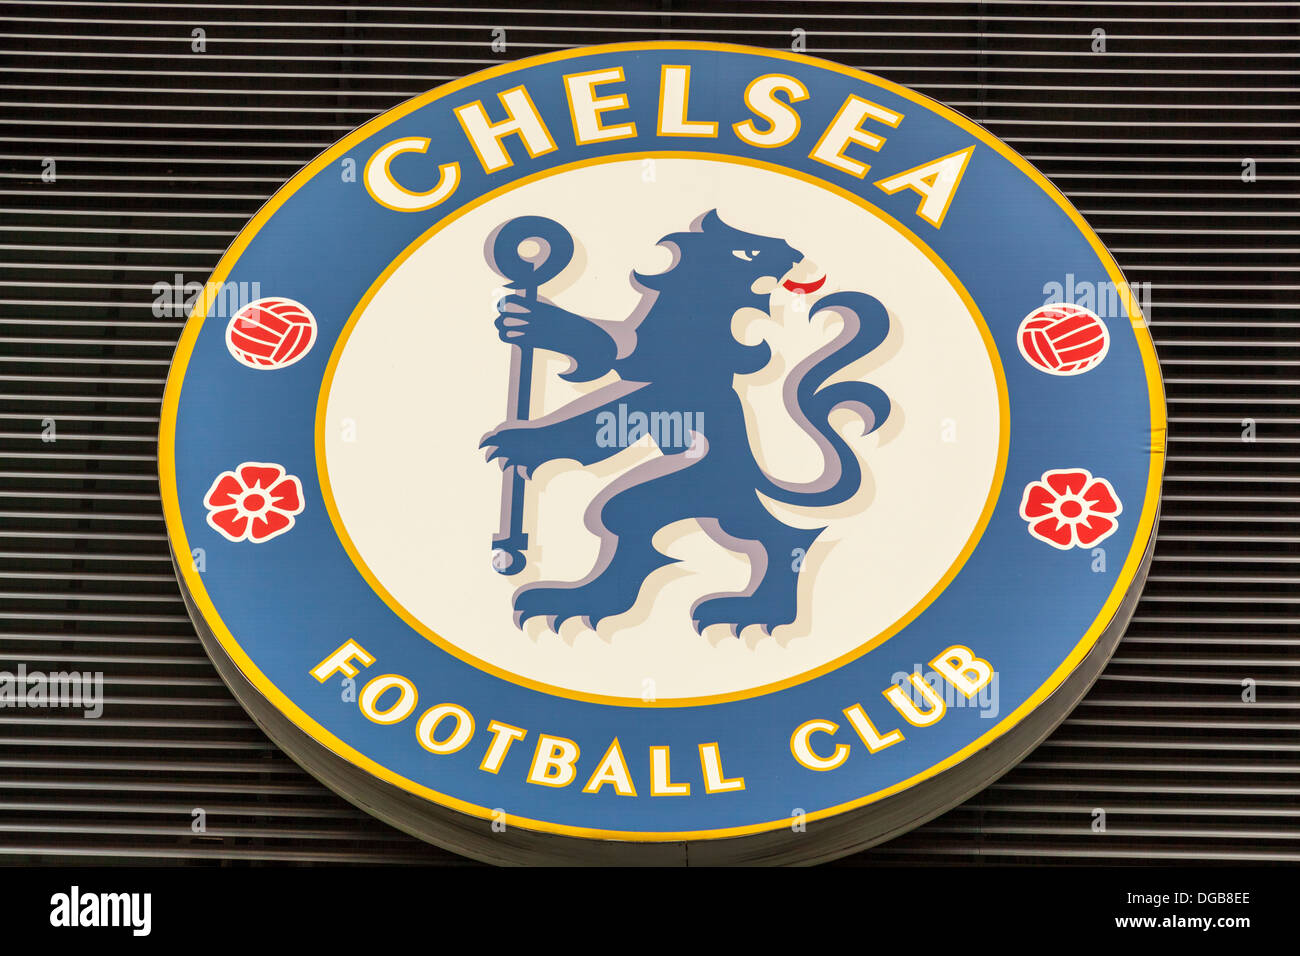 Chelsea Football Club logo sur un bâtiment abritant le musée du club, le stade de Stamford Bridge, Chelsea, Londres, Angleterre Banque D'Images